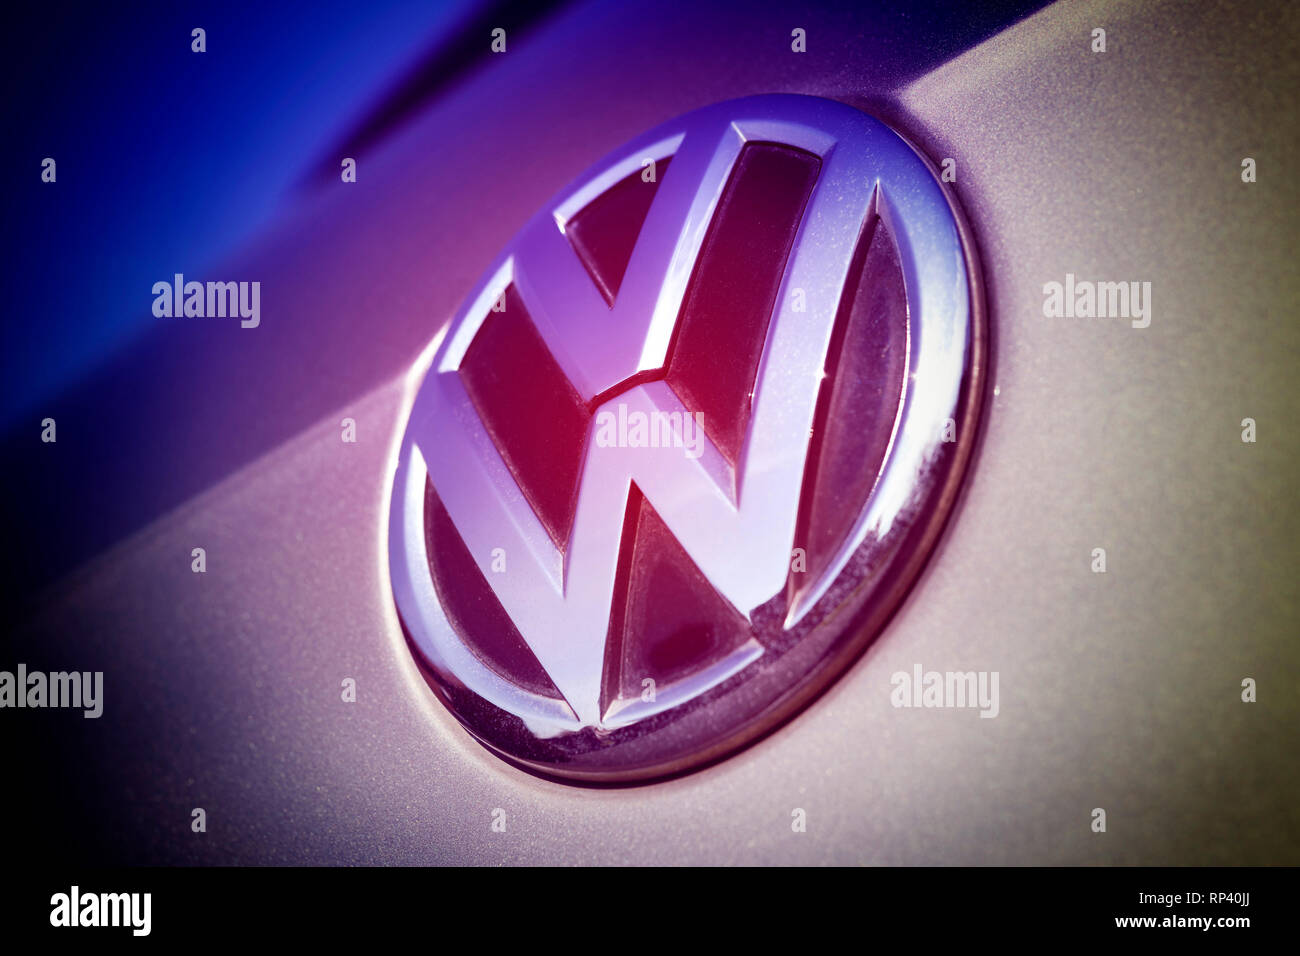 VW signs on a car, VW-Zeichen auf einem Auto Stock Photo